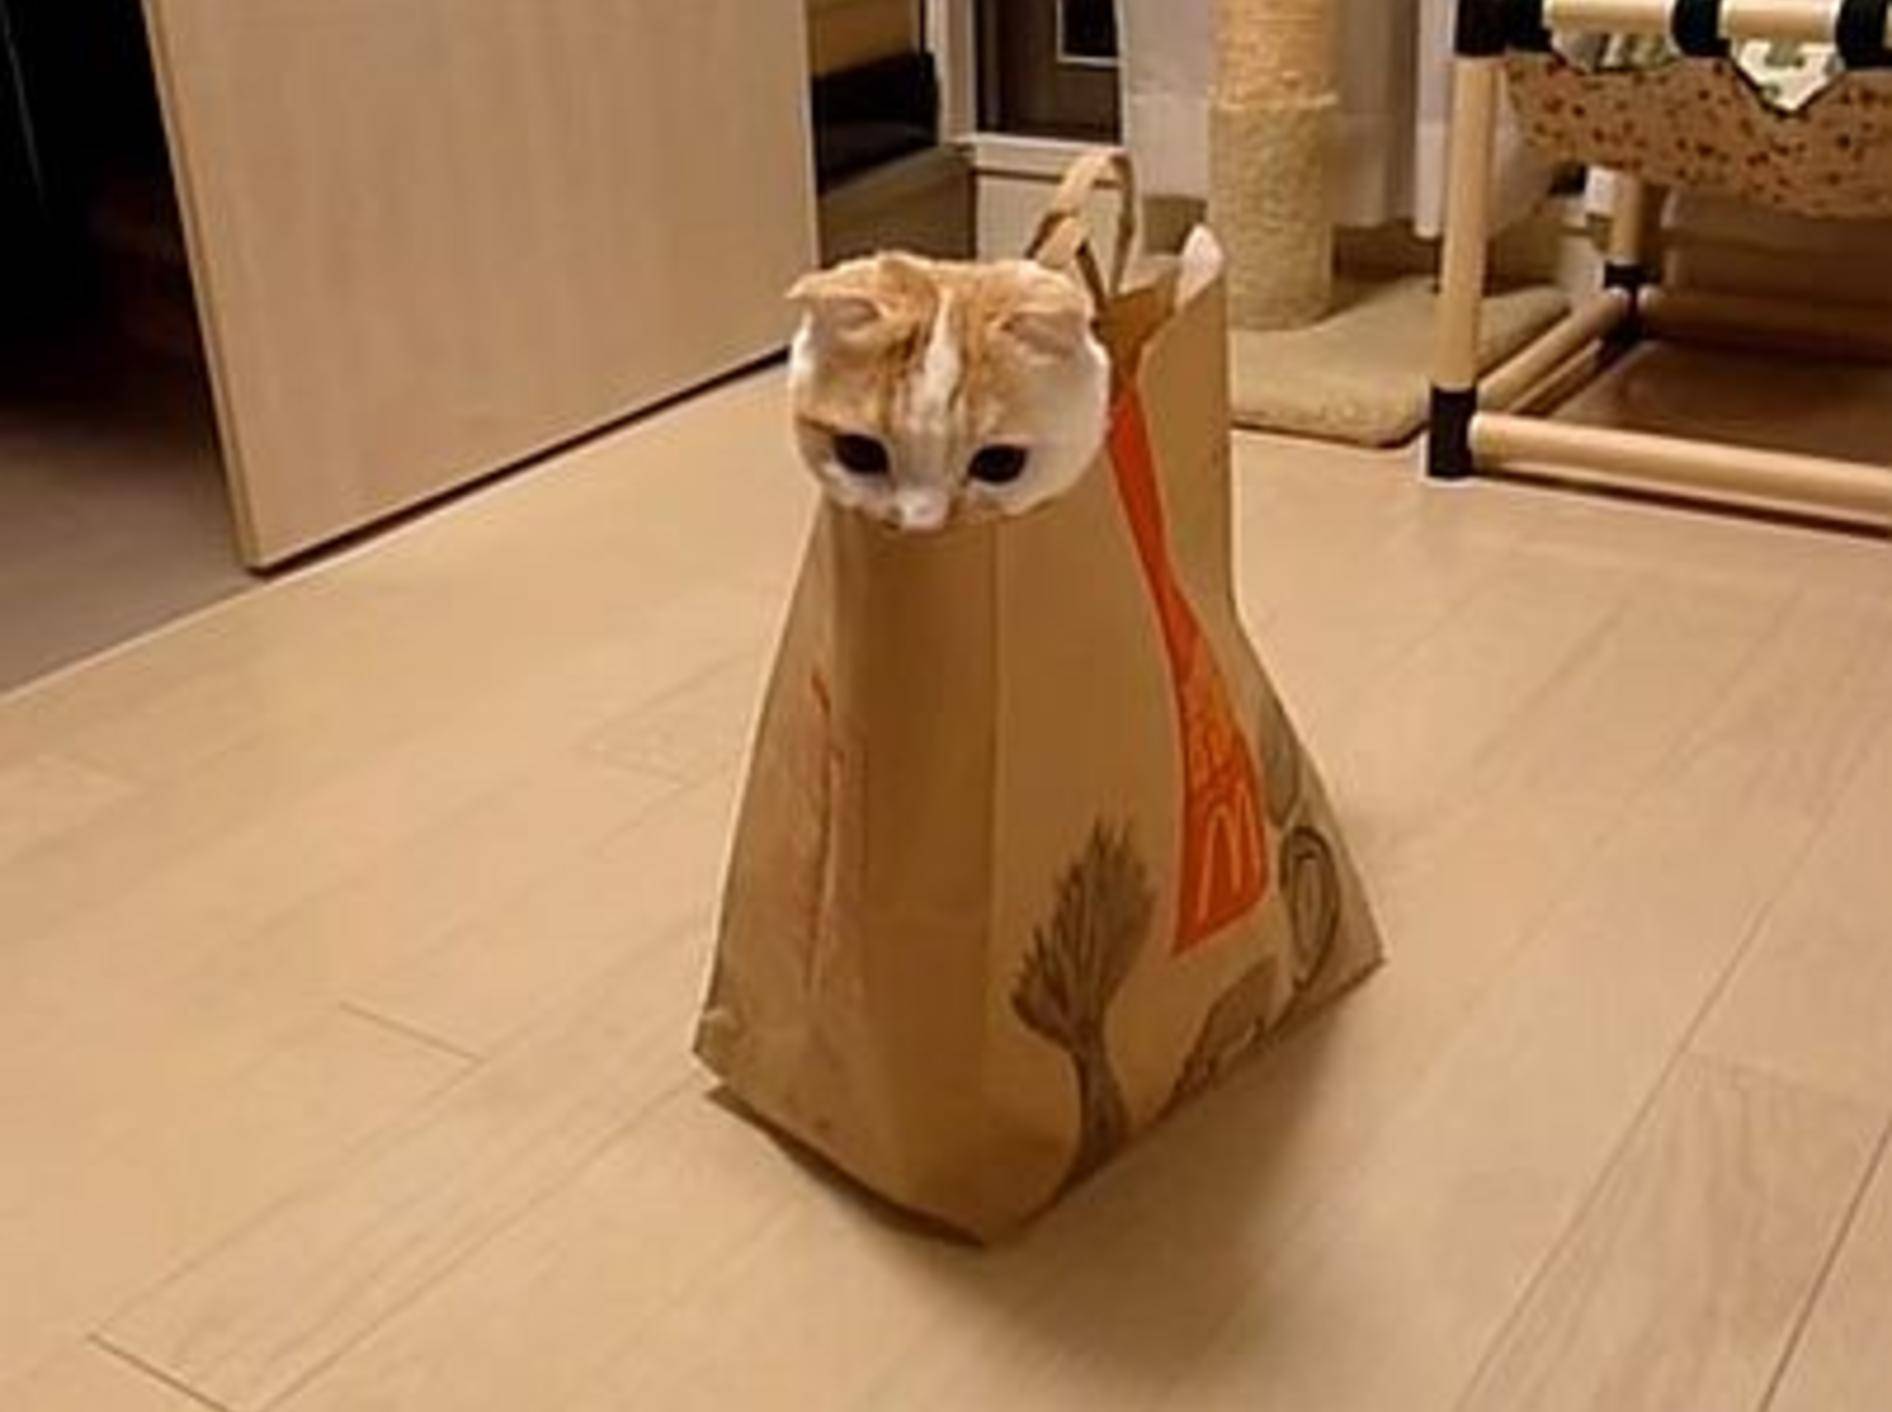 Süße Katze liebt ihr neues Versteck – Bild: Youtube / p00kke